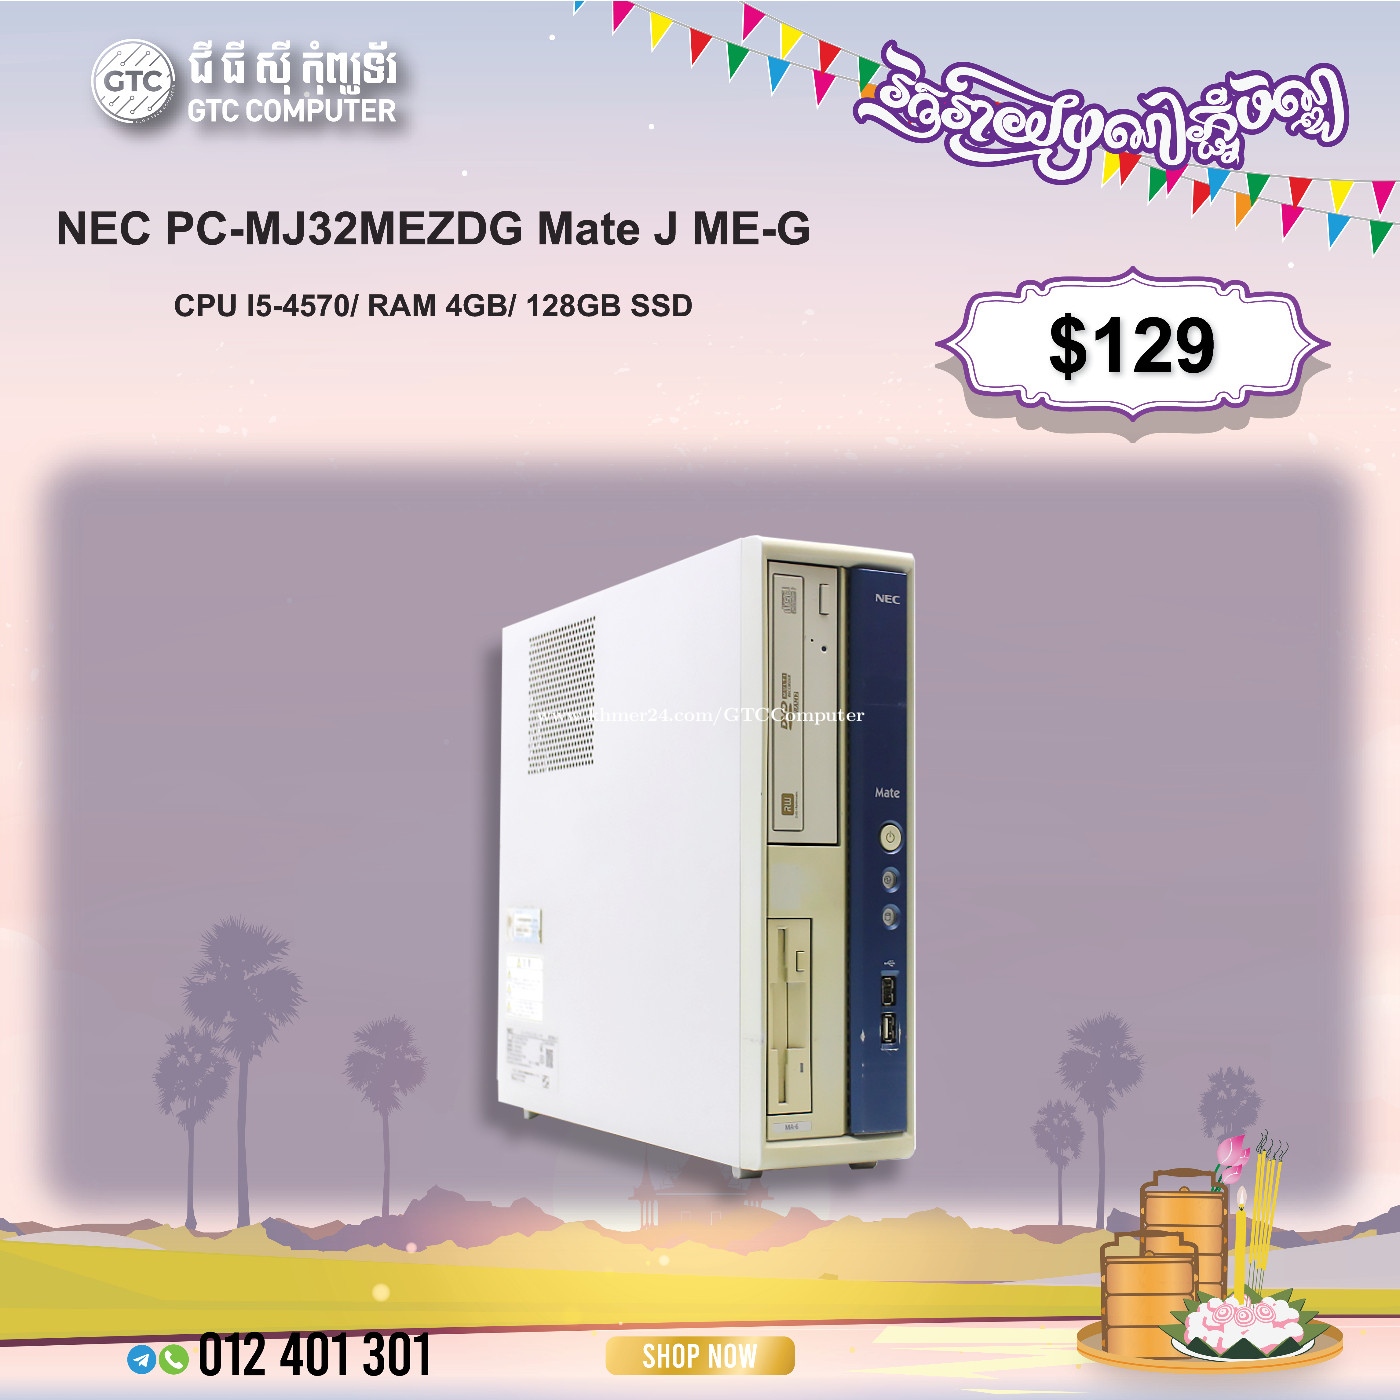 NEC PC-MJ32MEZDG Mate J ME-G Price $129.00 in Veal Vong, Cambodia